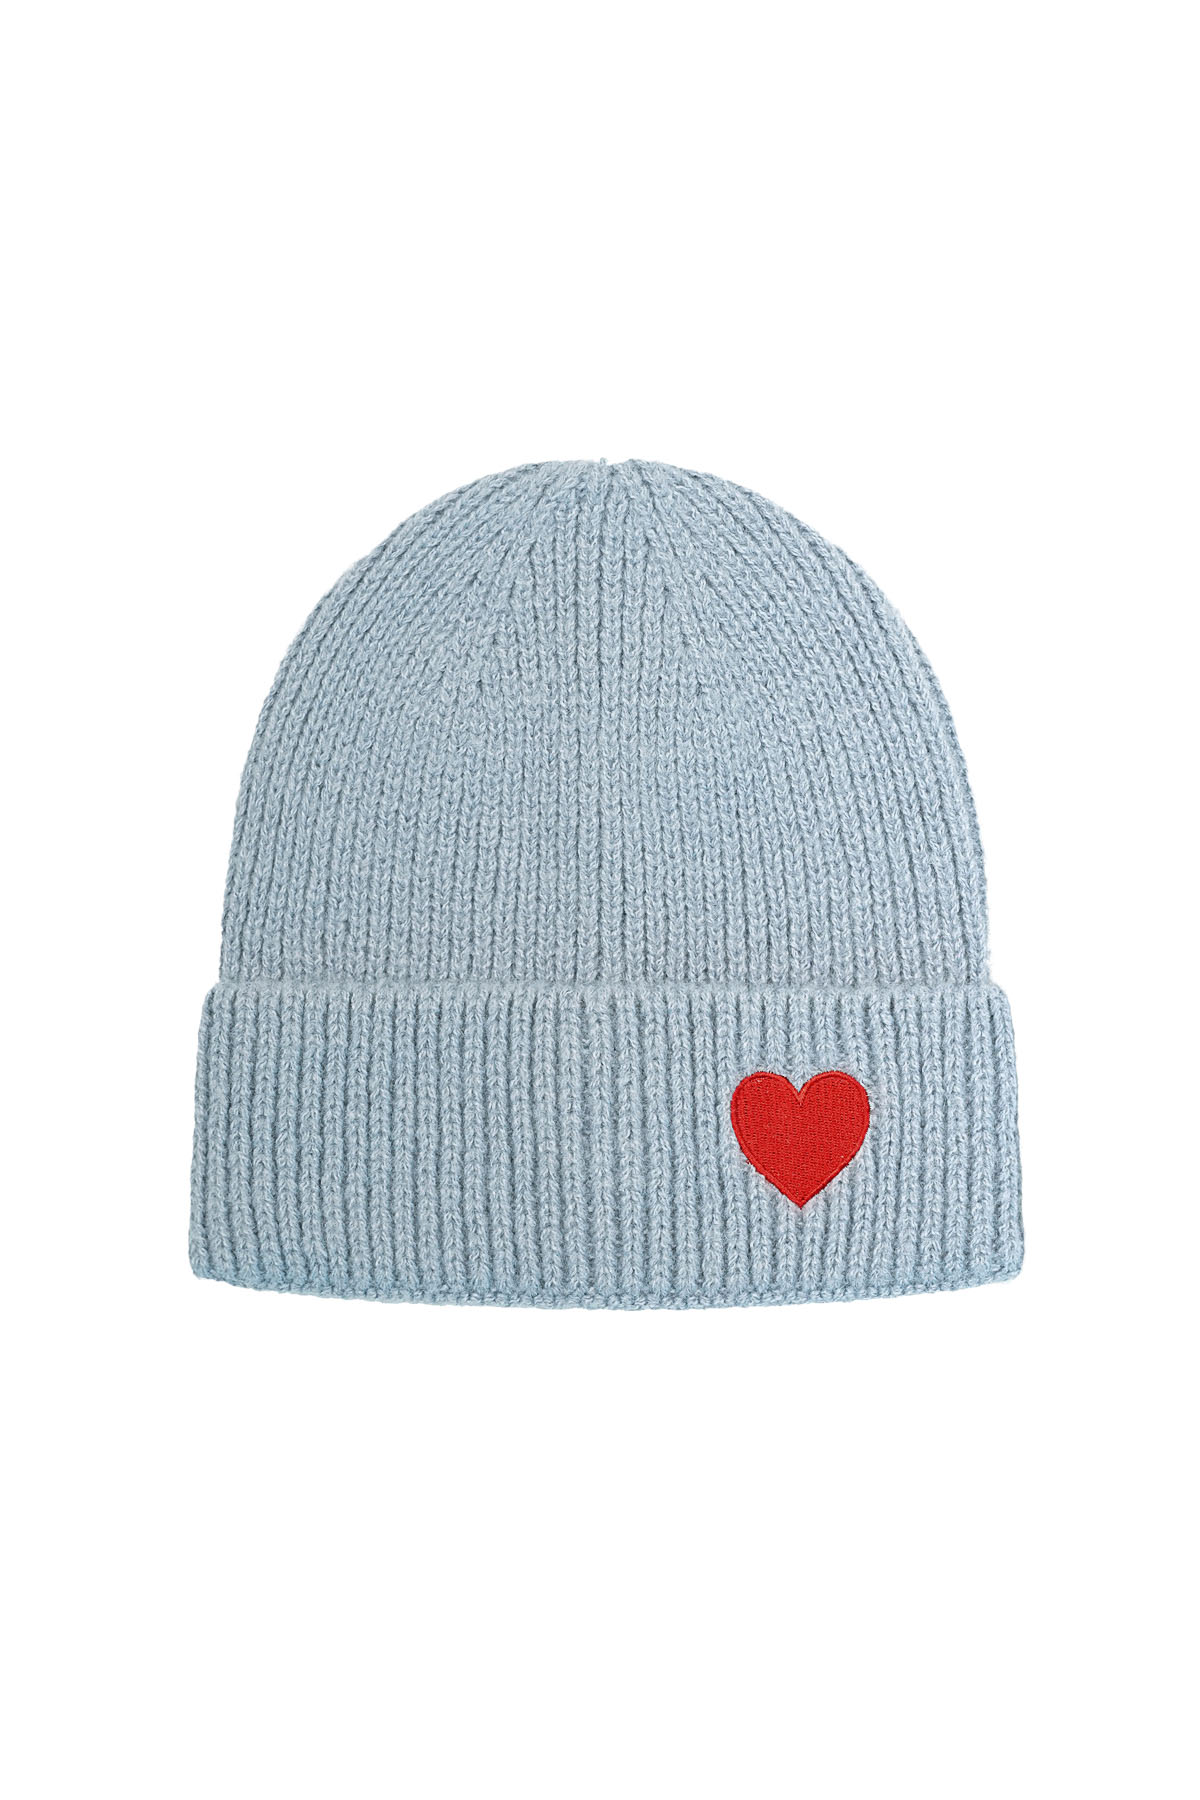 Cappello con dettaglio cuore - blu h5 